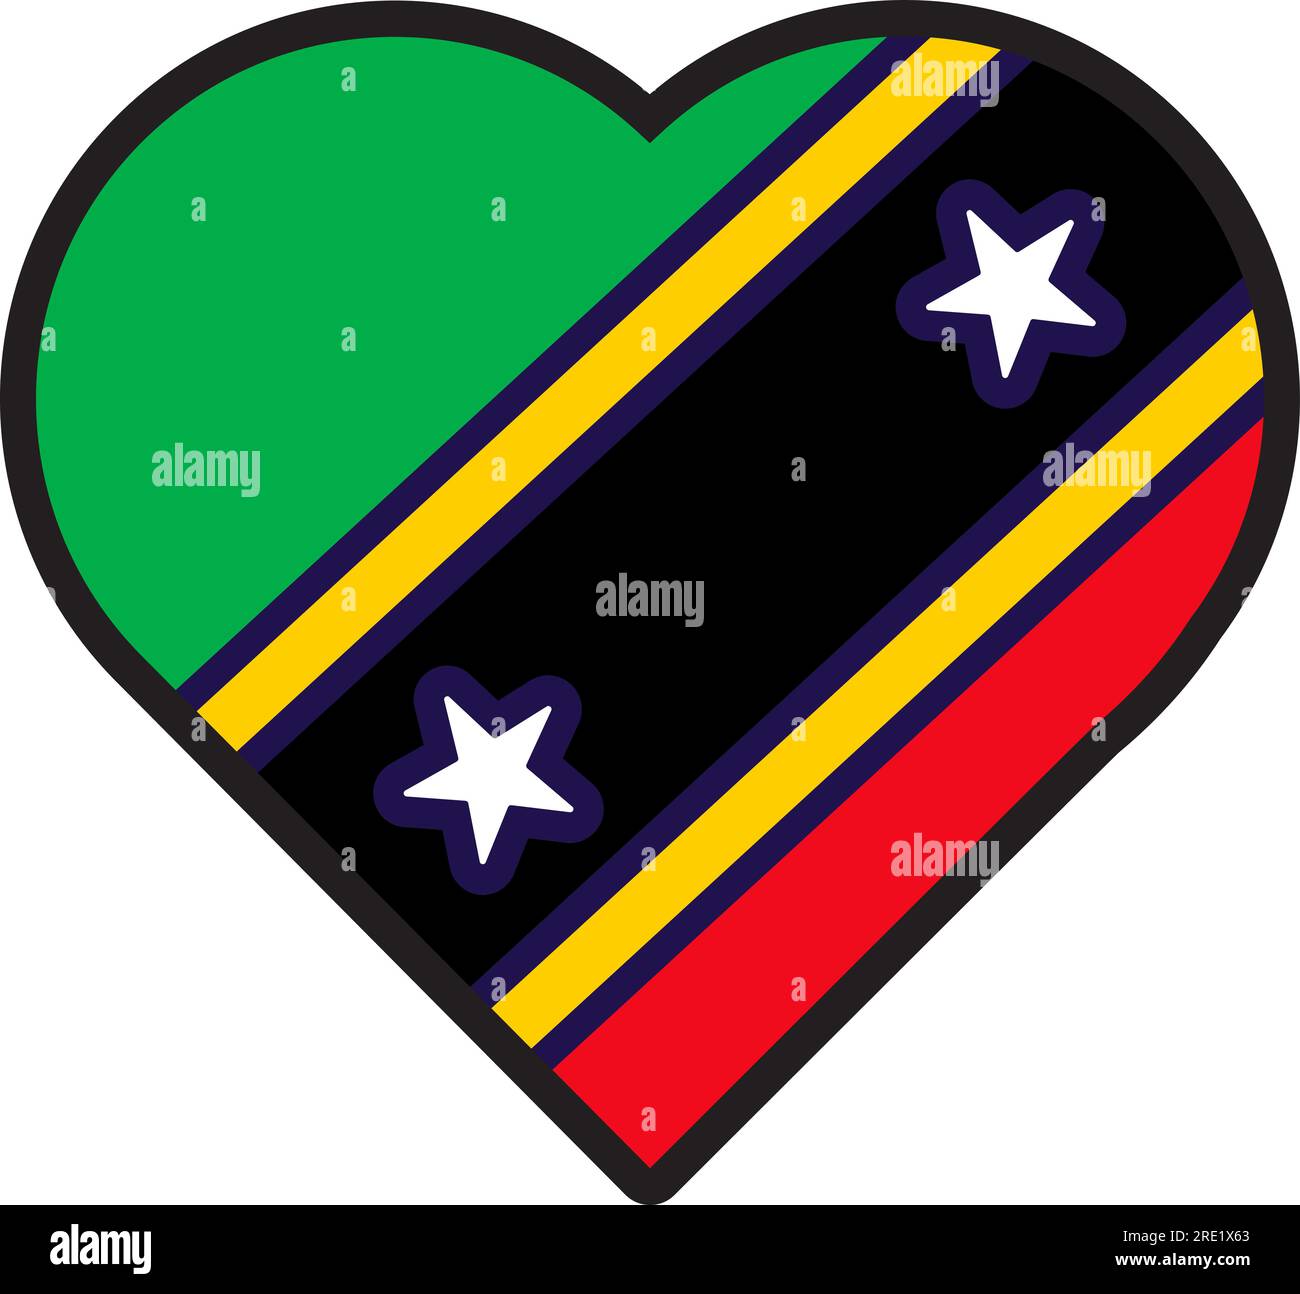 Cœur patriote dans les couleurs nationales du drapeau Saint Kitts Nevis. Élément festif, attributs de Saint Kitts Nevis Independence Day. Icône vectorielle de dessin animé en nat Illustration de Vecteur